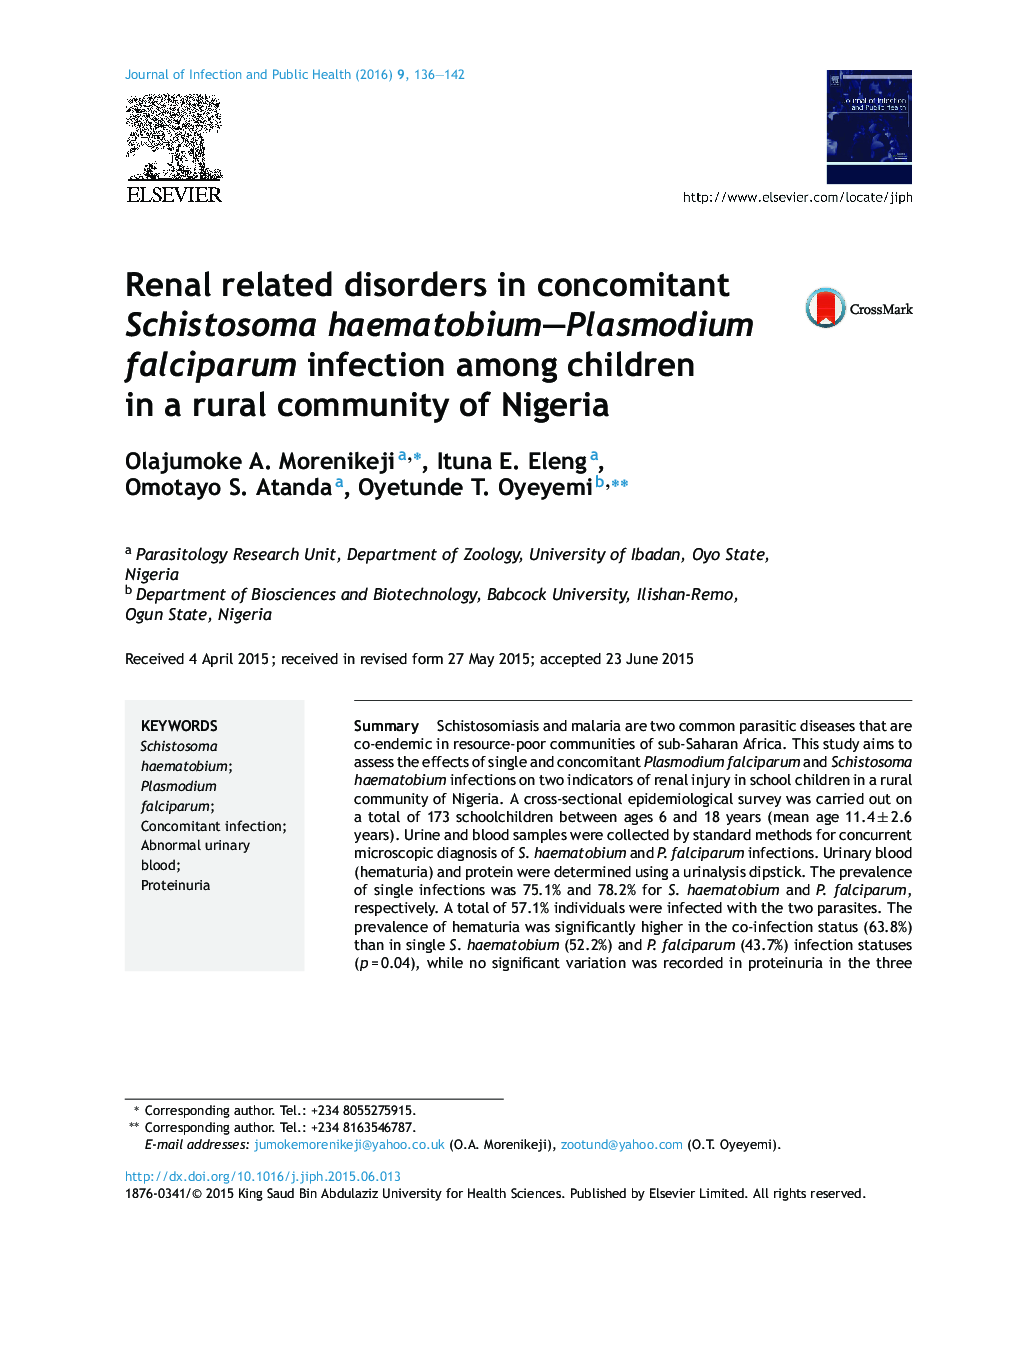 اختلالات مرتبط با کلیه در عفونت Schistosoma haematobium-plasmodium falciparum در میان کودکان در یک جامعه روستایی نیجریه